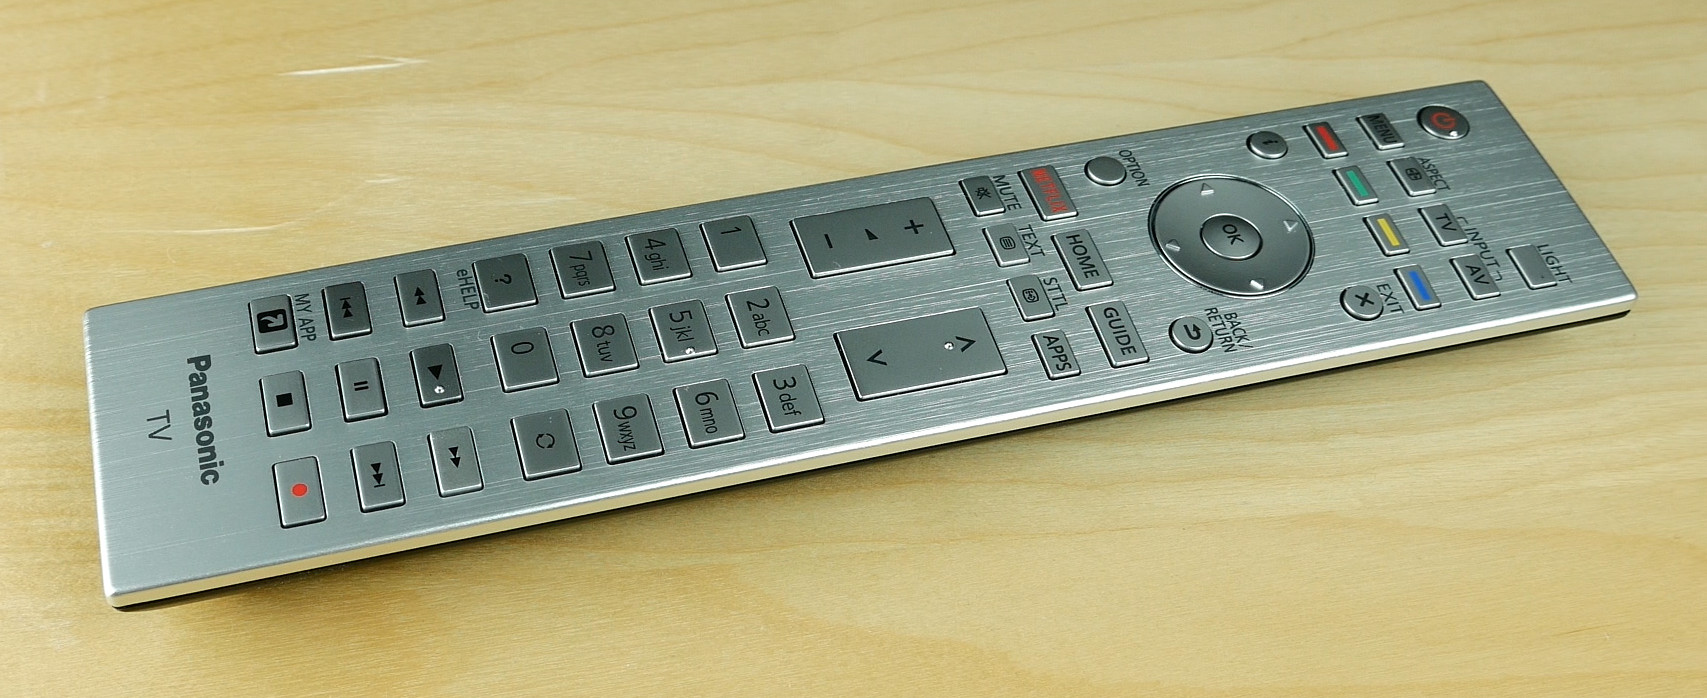 Main remote control